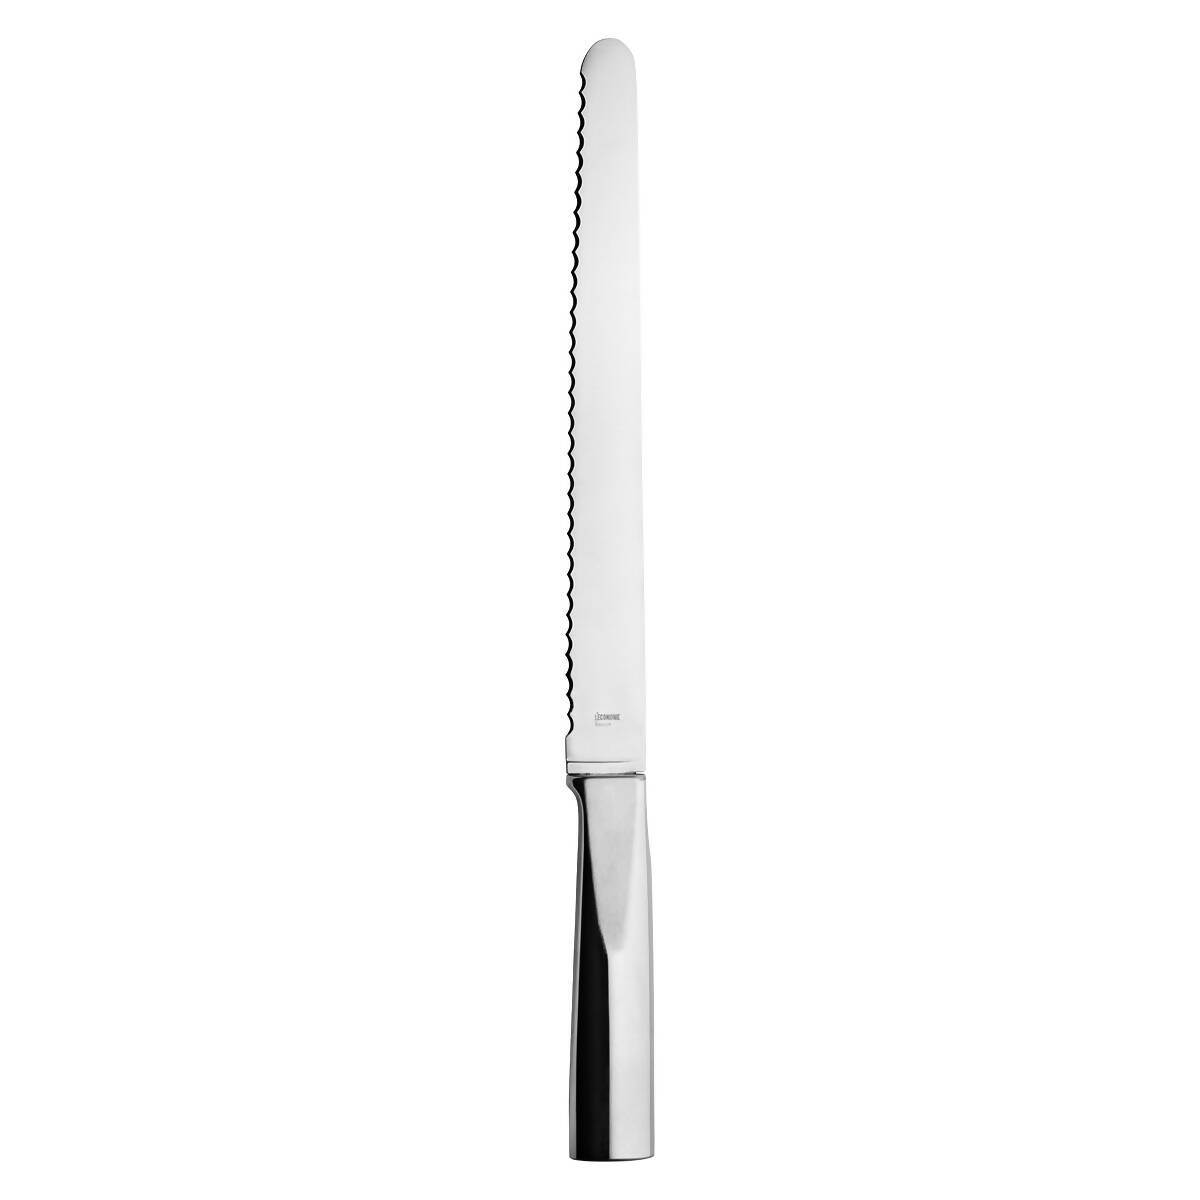 L'ECONOME - Bread knife